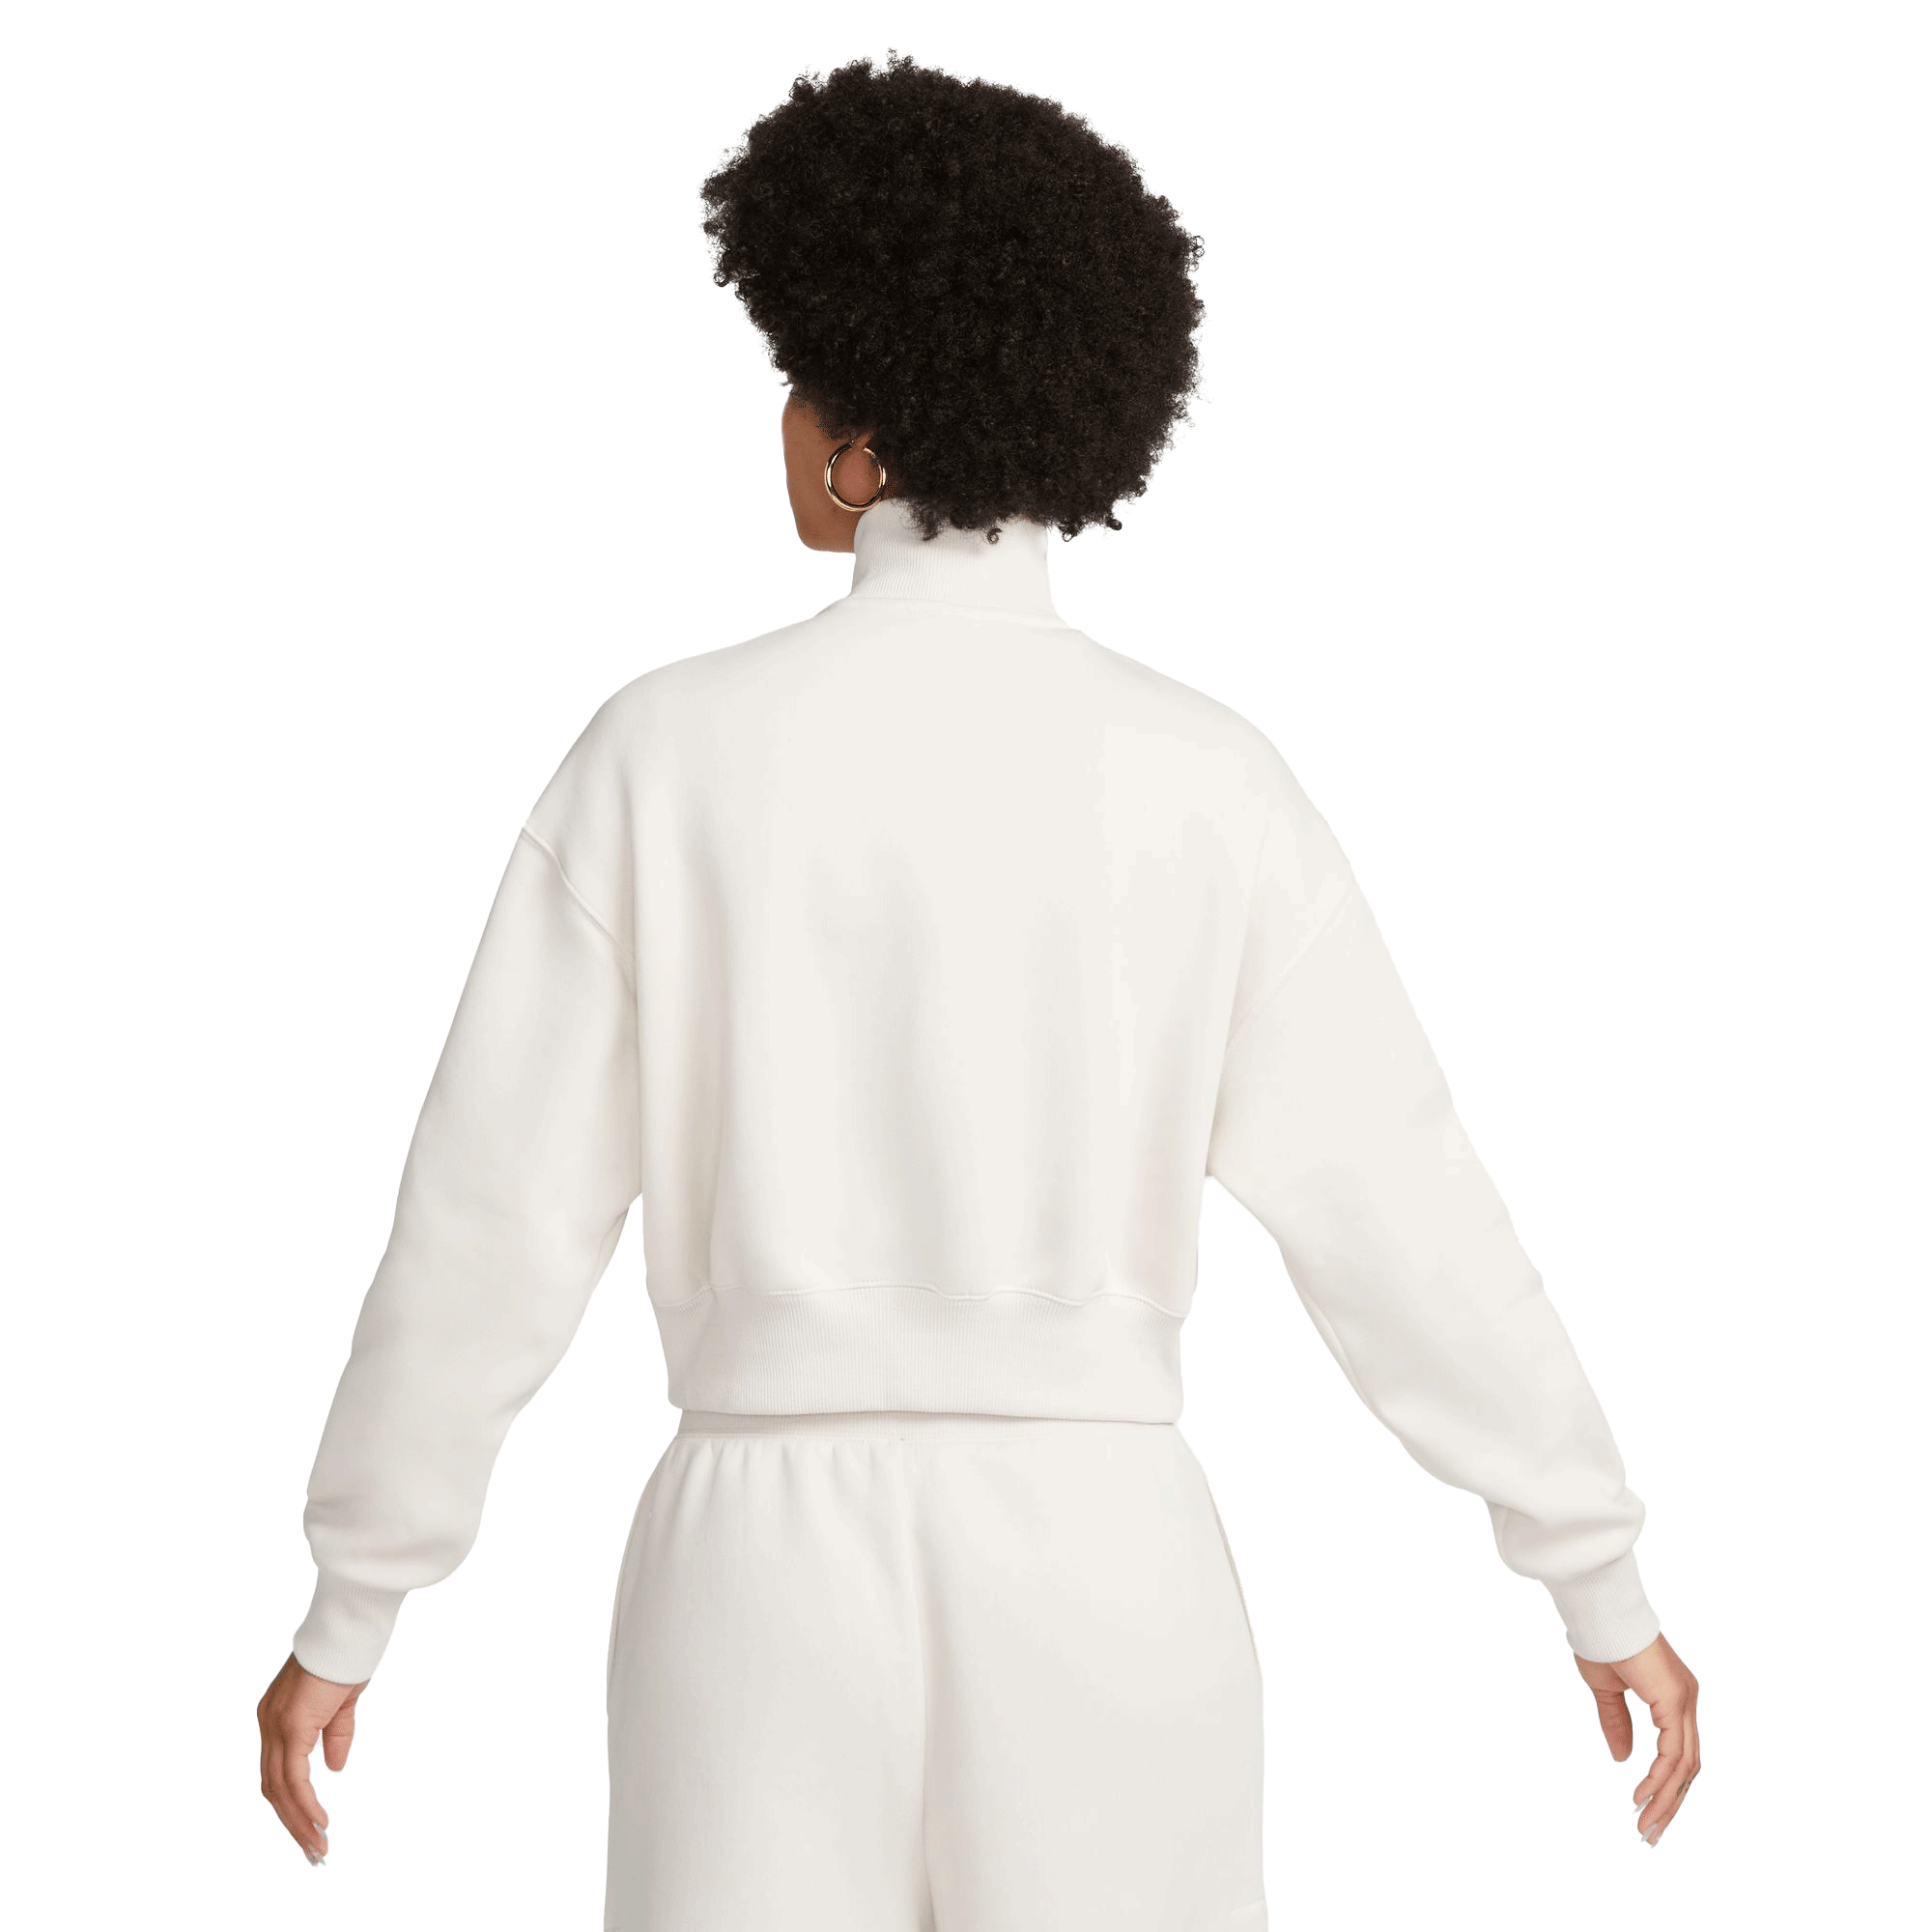 Nike Sportswear Phoenix Fleece Women's 1/2-Zip Cropped Sweatshirt